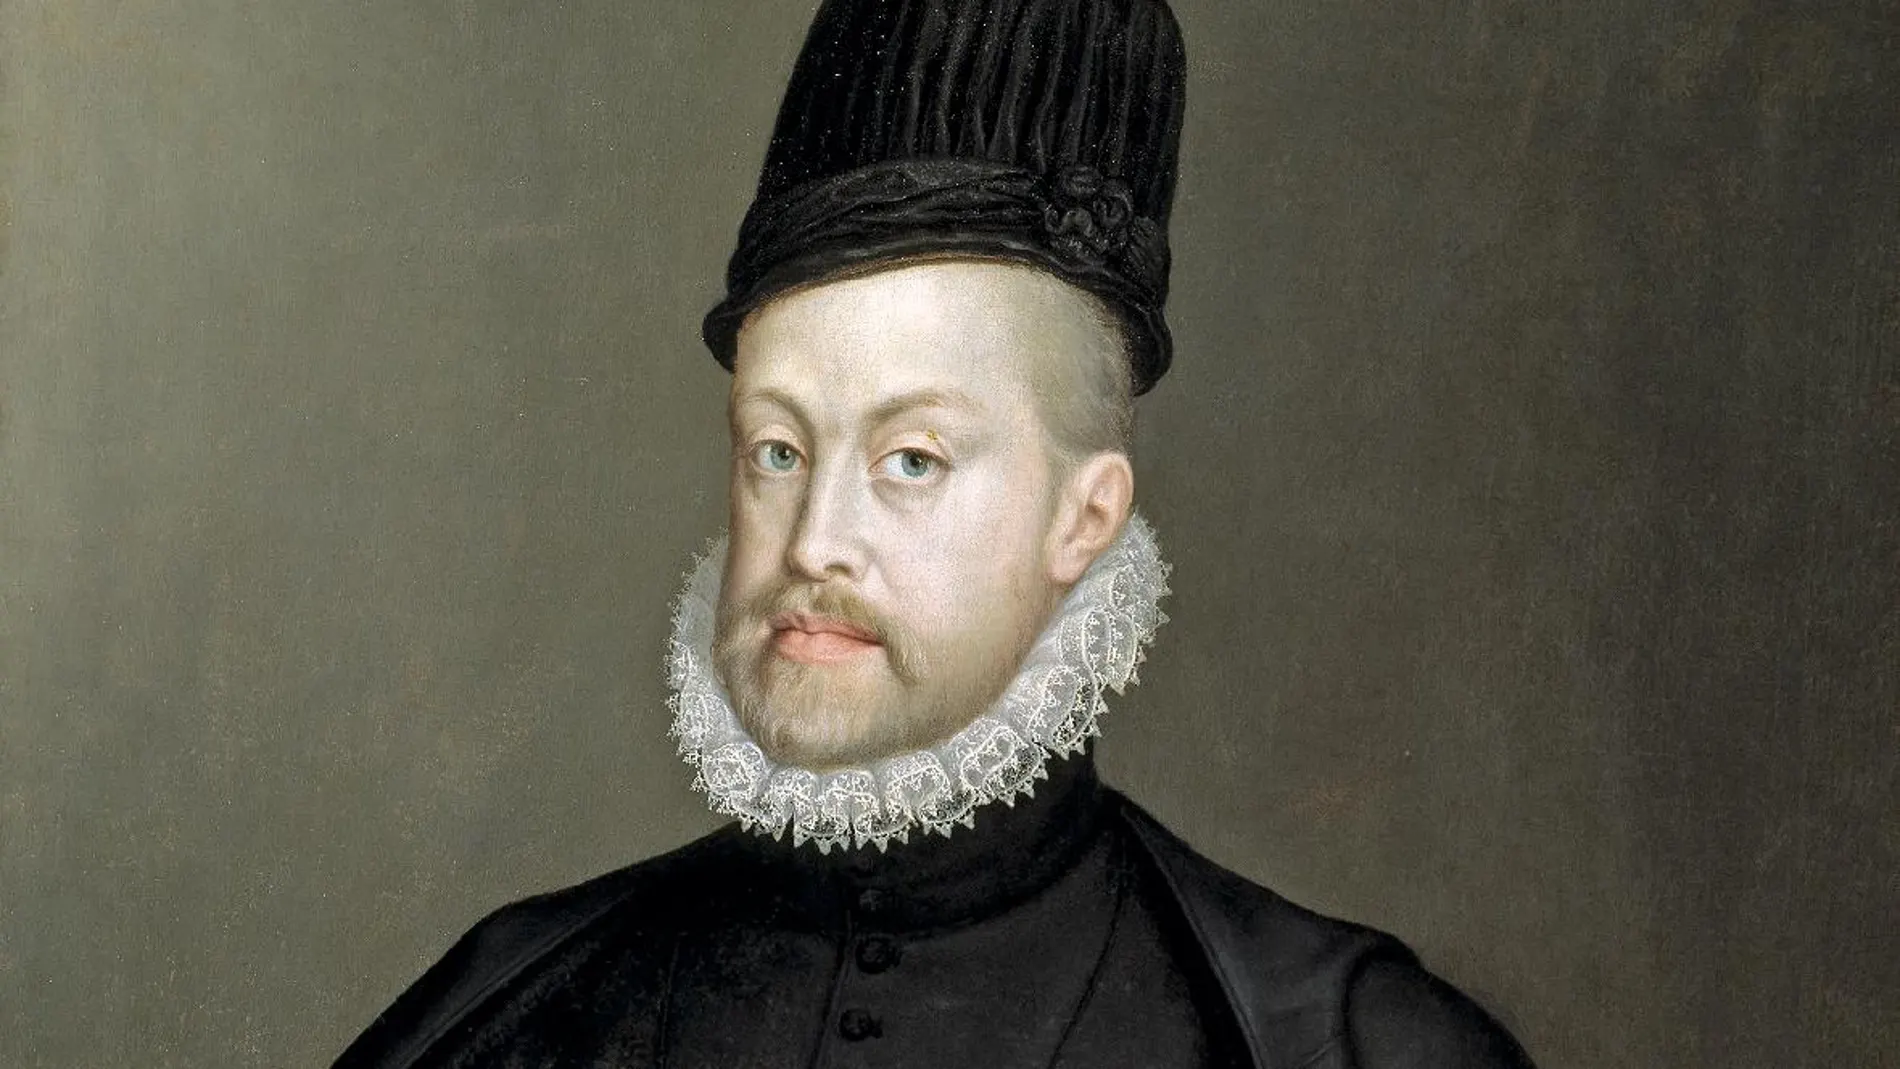 Felipe II vistió de riguroso luto desde 1658 a raíz de la muerte de su hijo Carlos